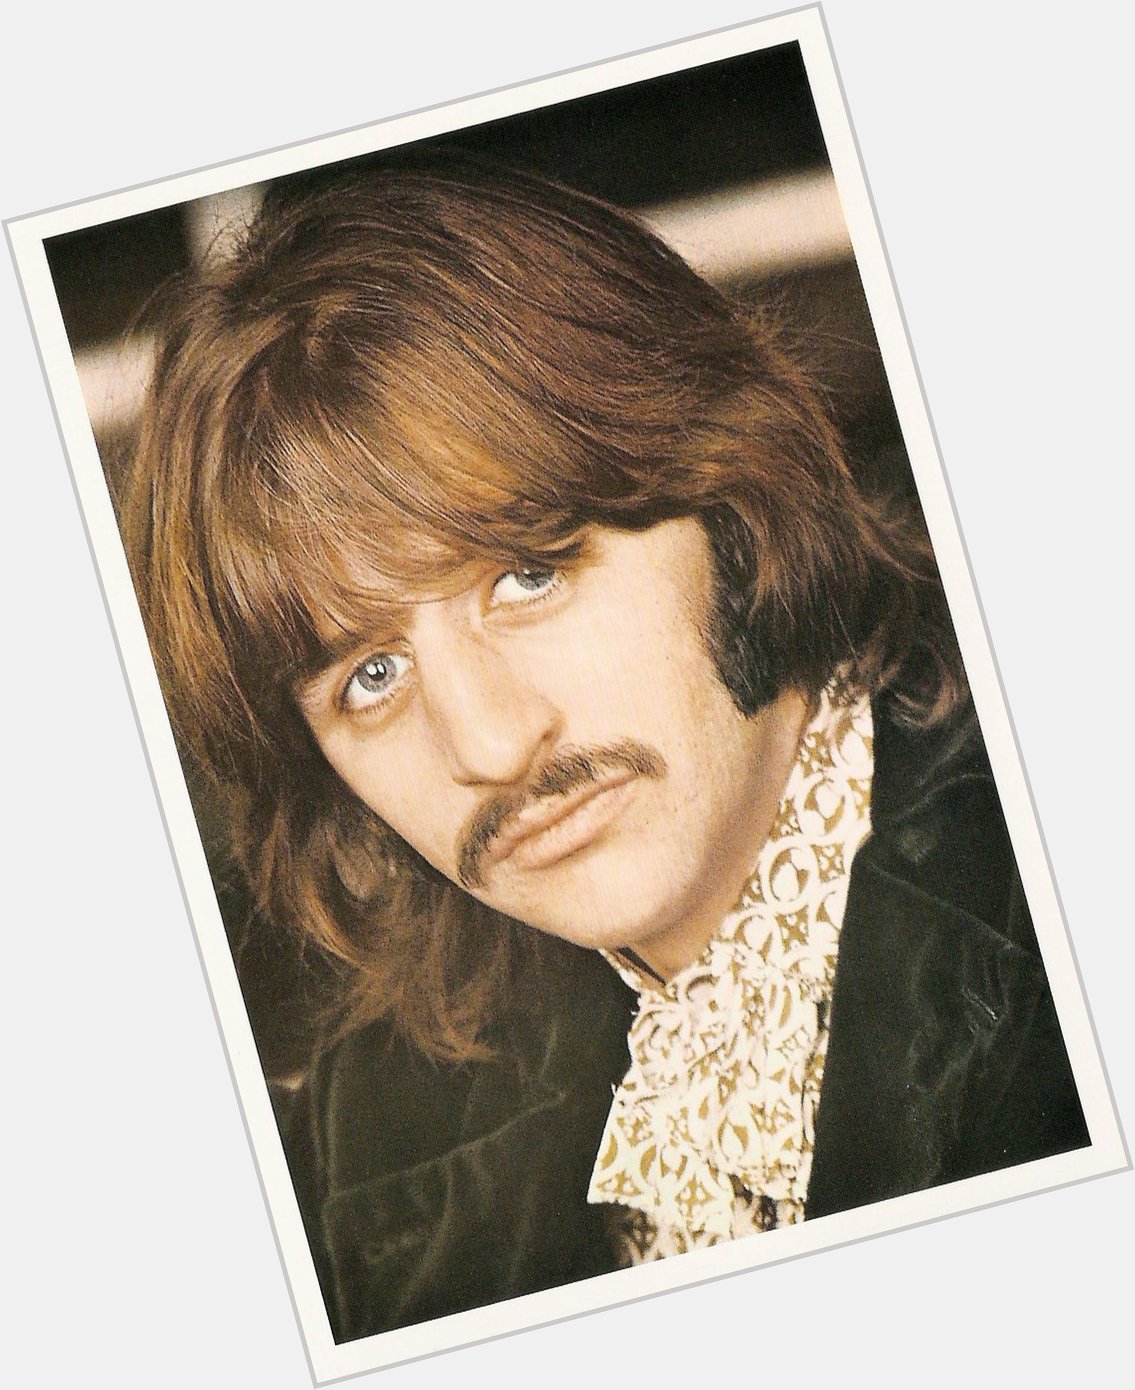 Happy Birthday Ringo Starr!  